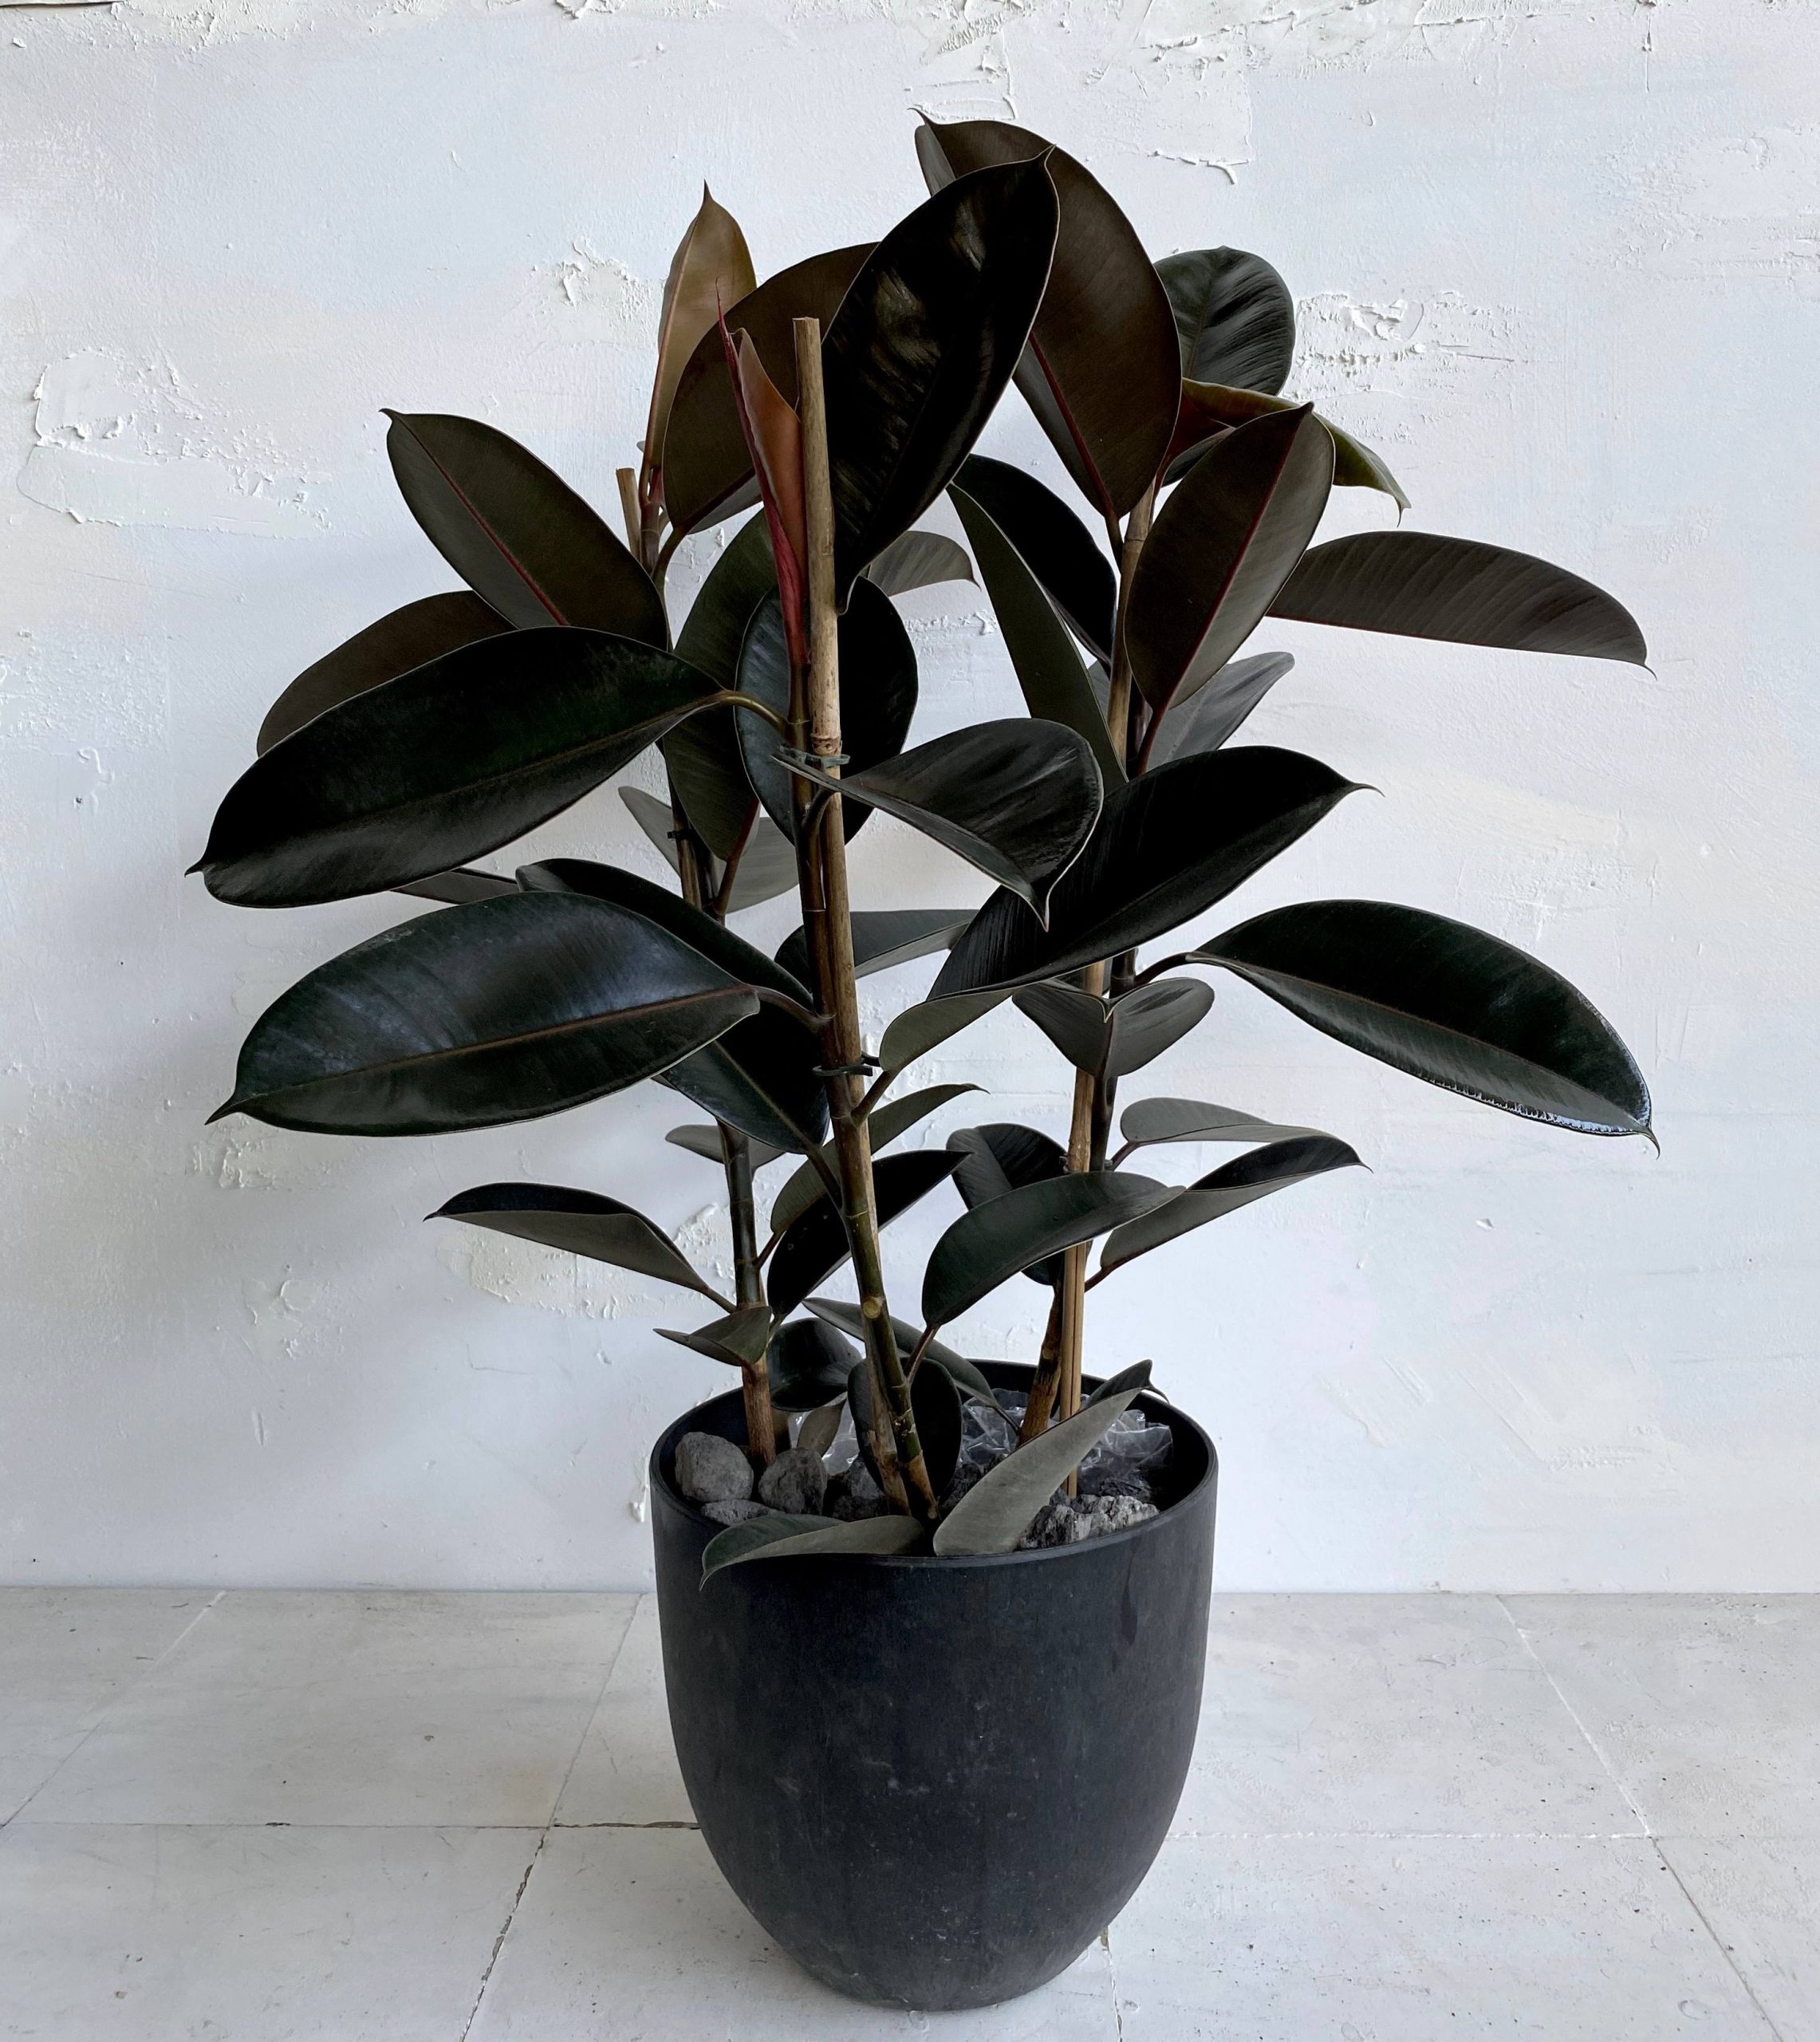 צמח גדול לבית או למשרד פיקוס גומי שחור למראה מבריק וייחודי